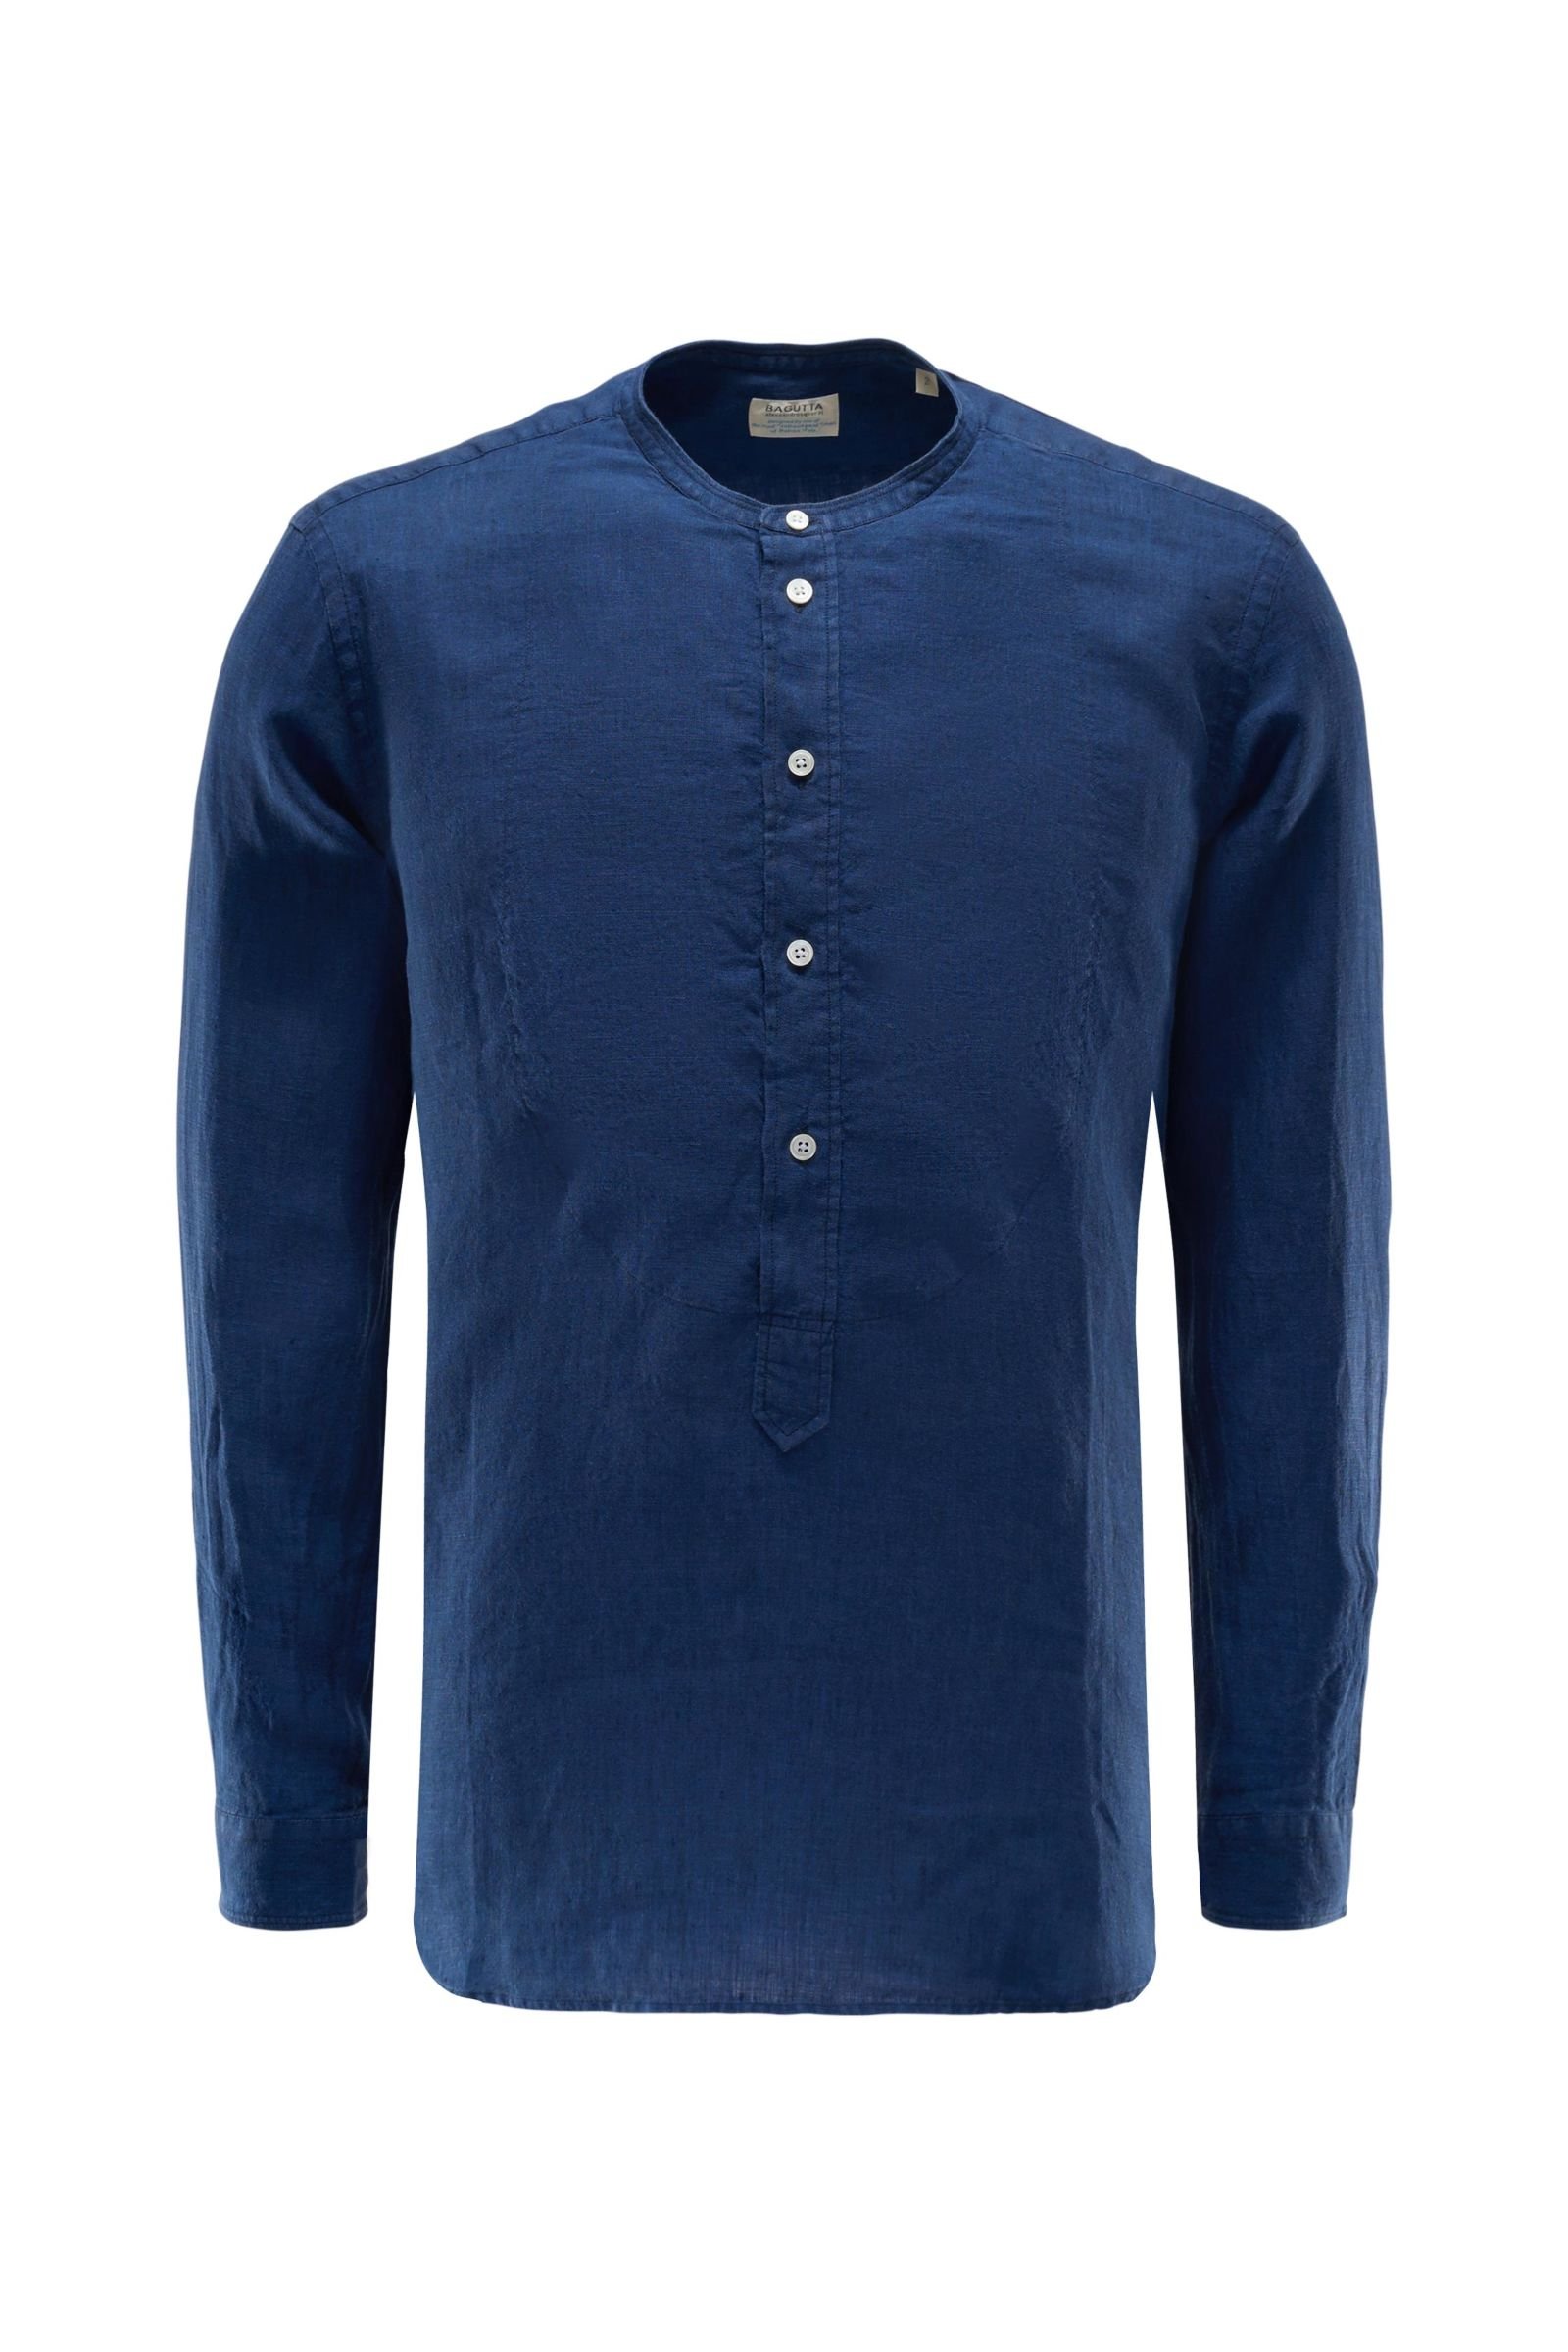 Linen popover shirt 'Harbour' grandad collar navy